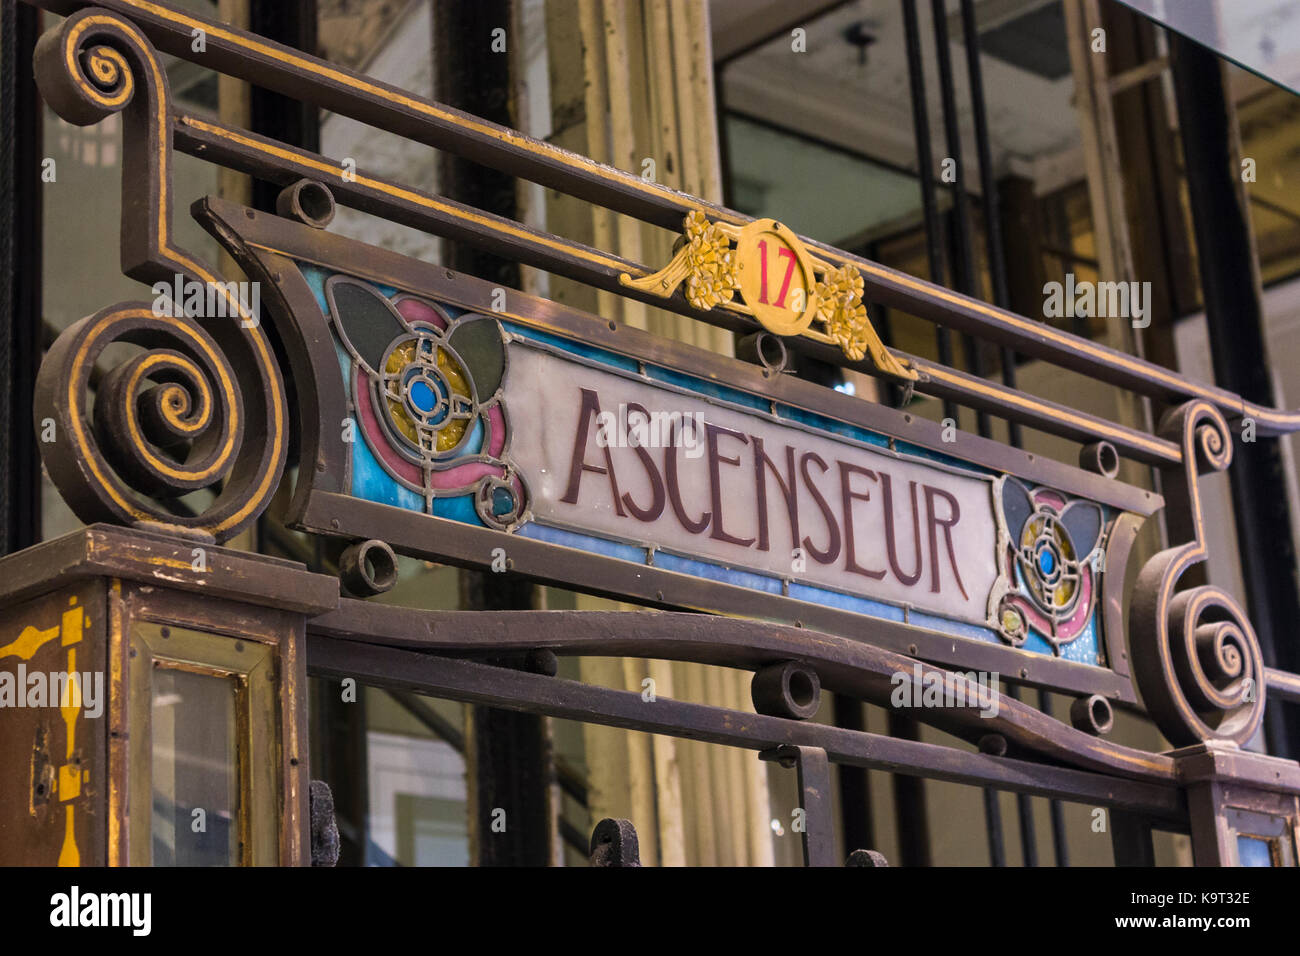 L'art nouveau signe de levage dans les galeries lafayette, Paris, France Banque D'Images